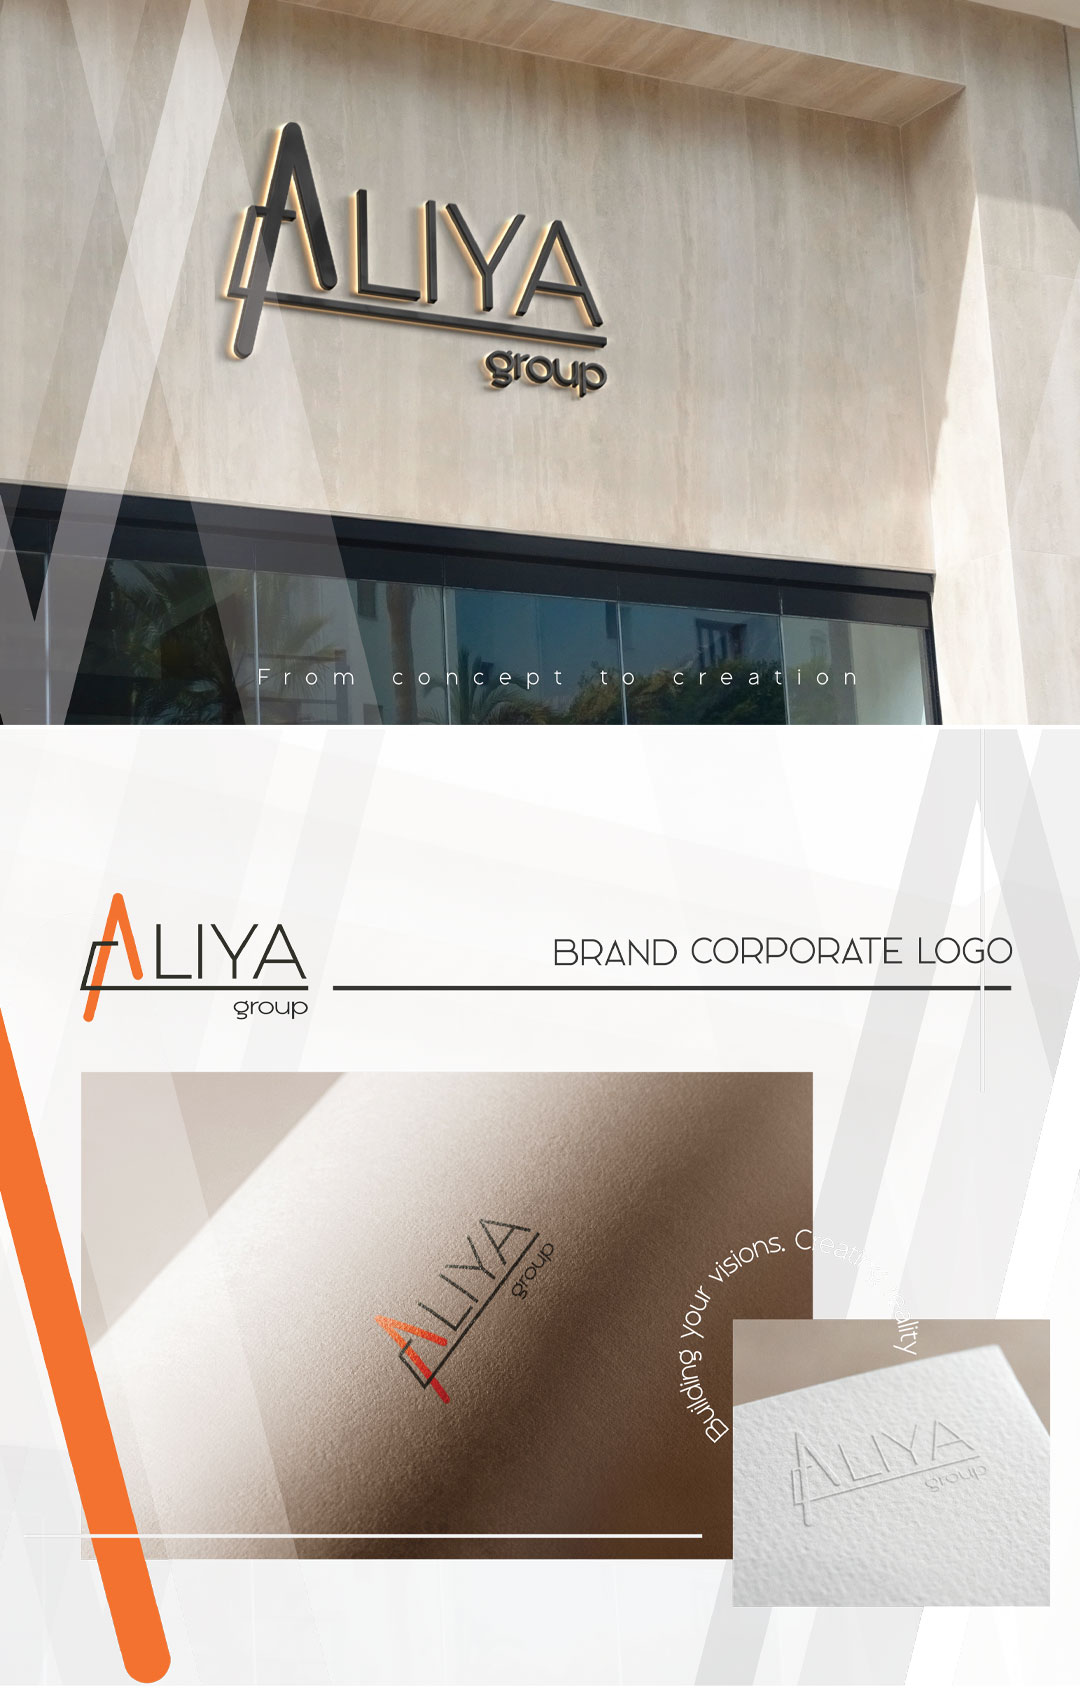 Aliya Group